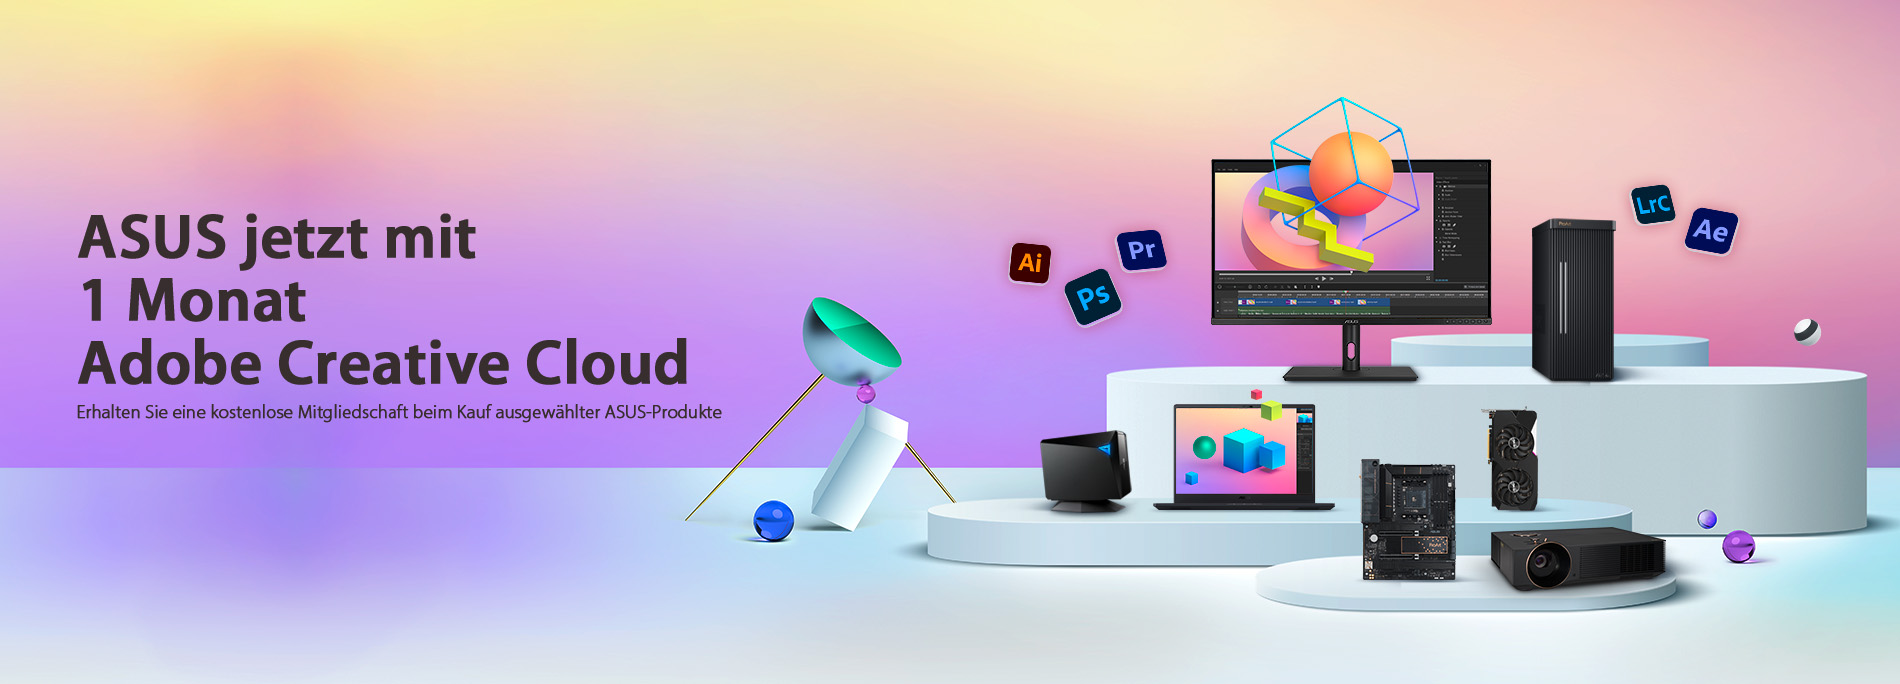 Jetzt 1 Monat Adobe Creative Cloud sichern mit ASUS